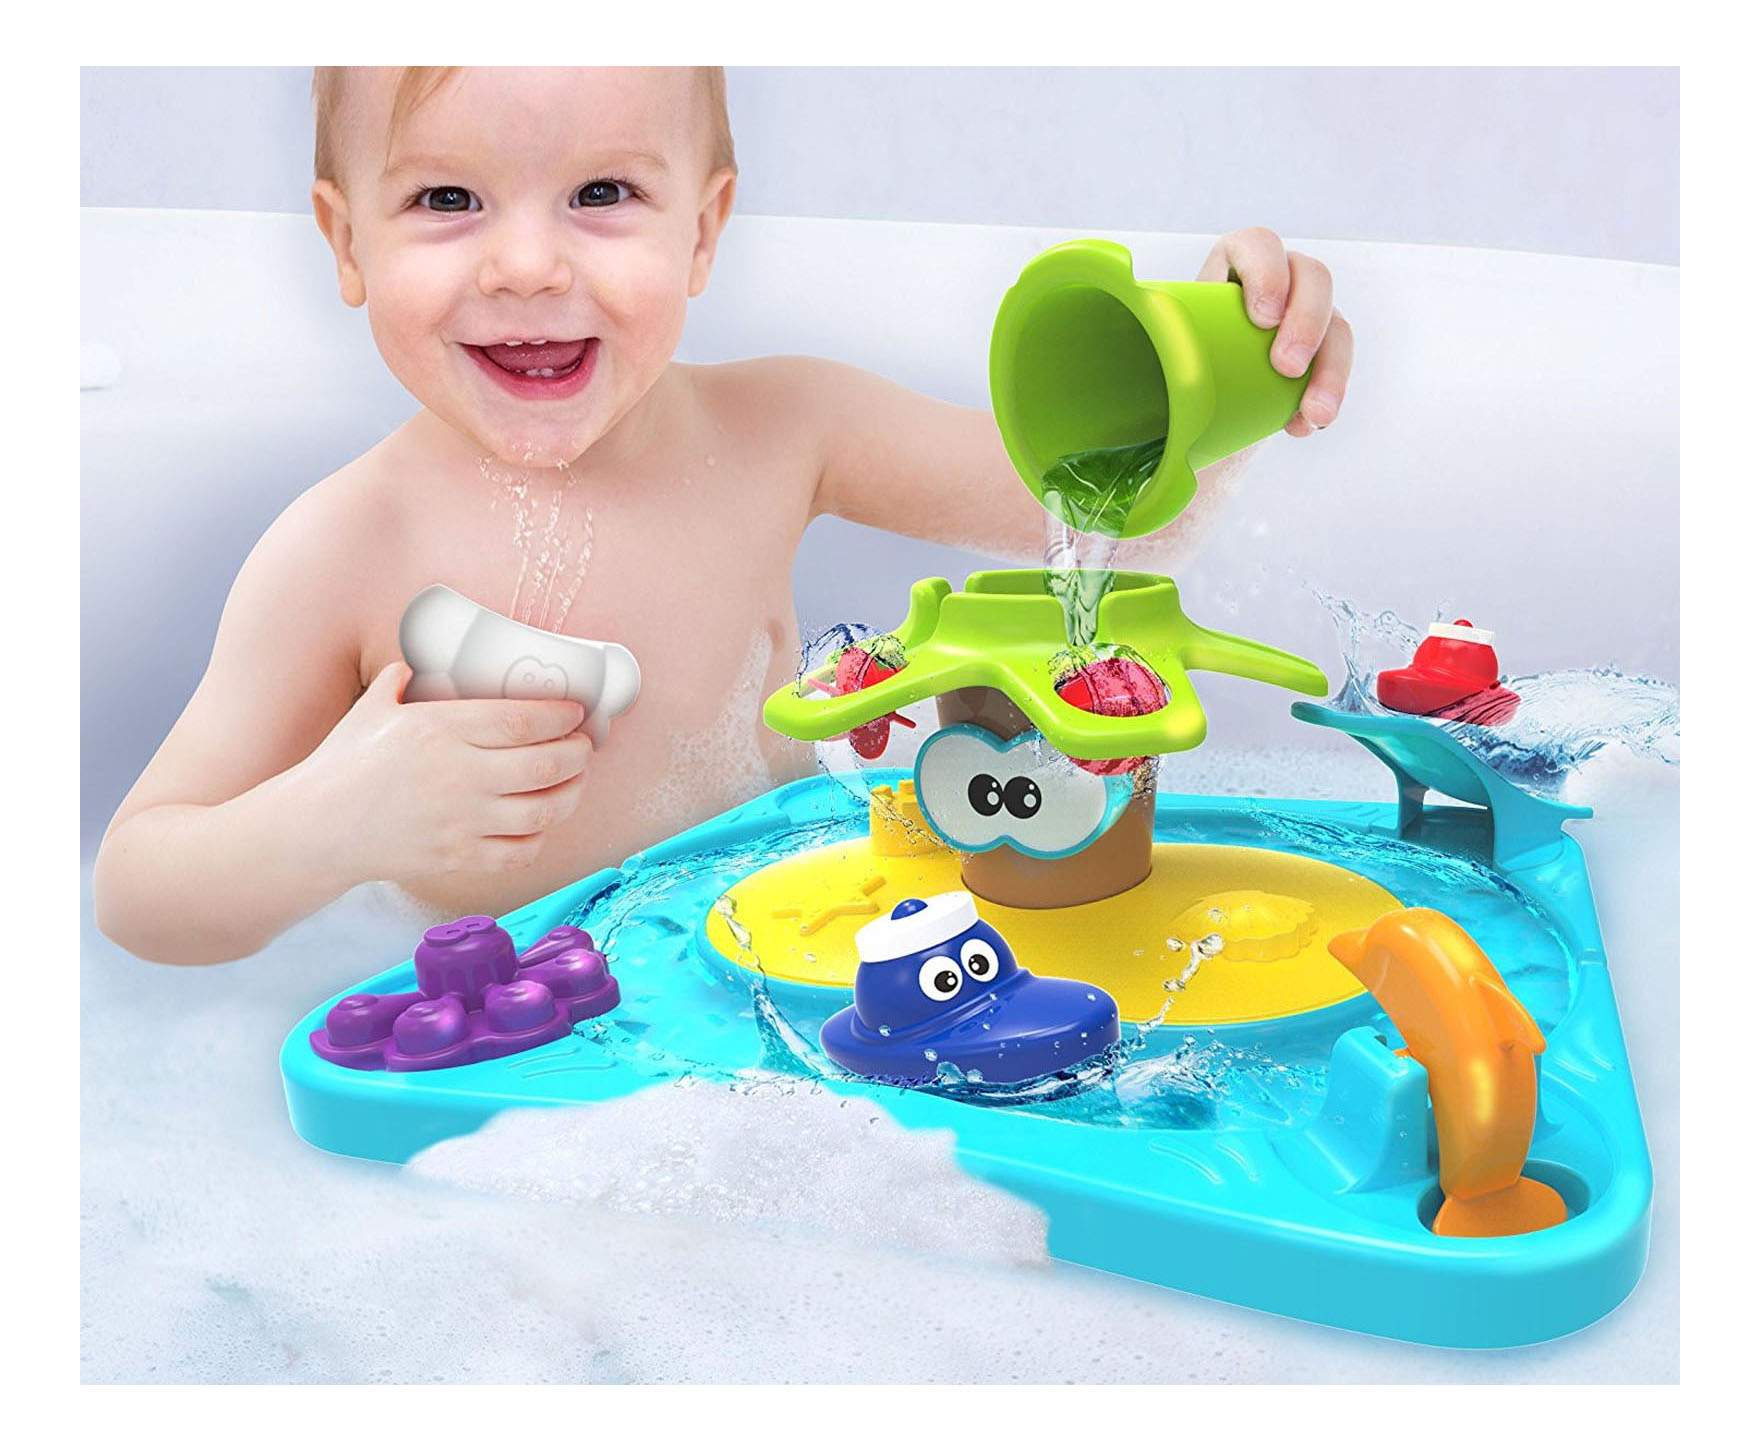 Купить игрушки для ванной. Детская игрушка для ванны. Игрушки для купания малышей. Интересные игрушки для ванной. Игрушки в ванную для детей.